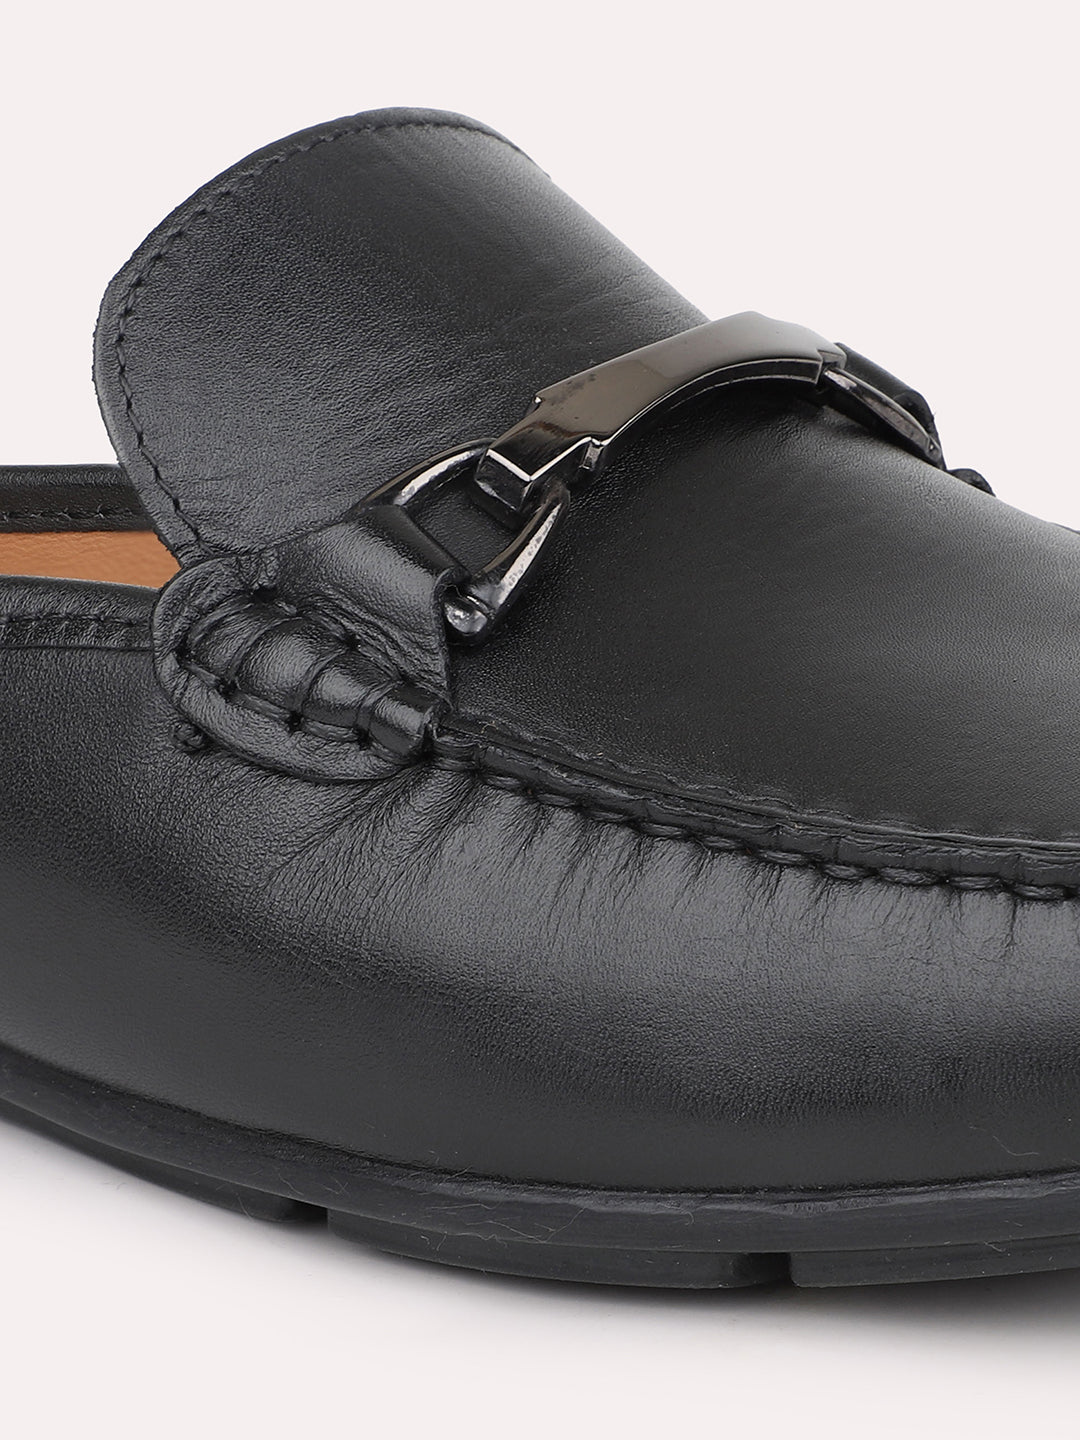 Atesber Black Loafer Shoes For Men